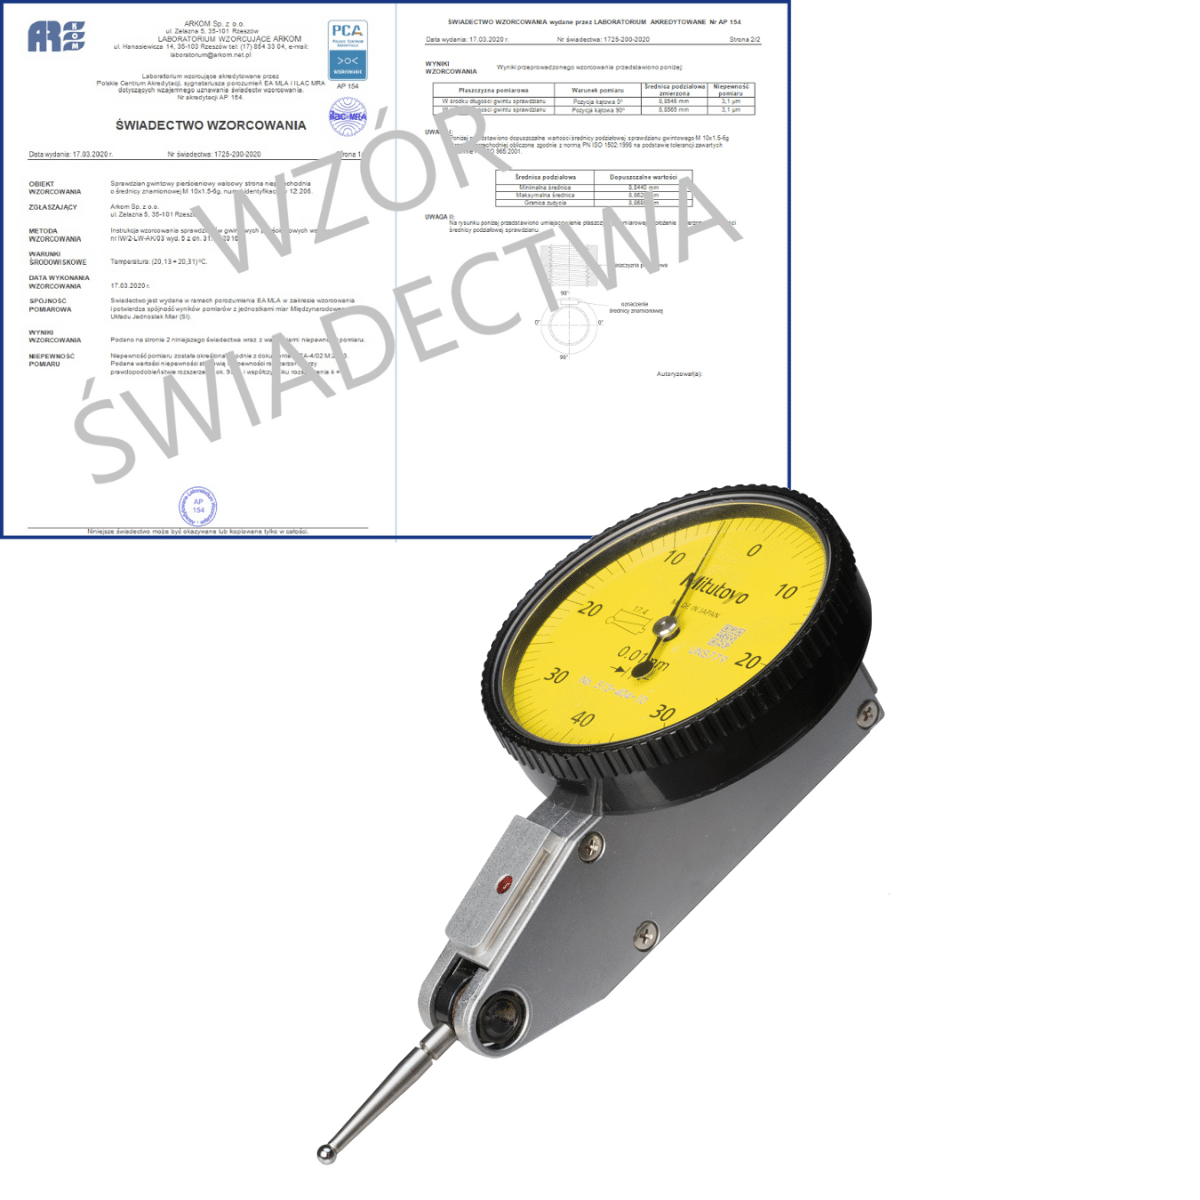 MITUTOYO czujnik dźwigniowo-zębaty 0-40-0/0,8/0,01 mm typ poziomy + świadectwo wzorcowania PCA 513-404-10E WZORC (Zdjęcie 1)